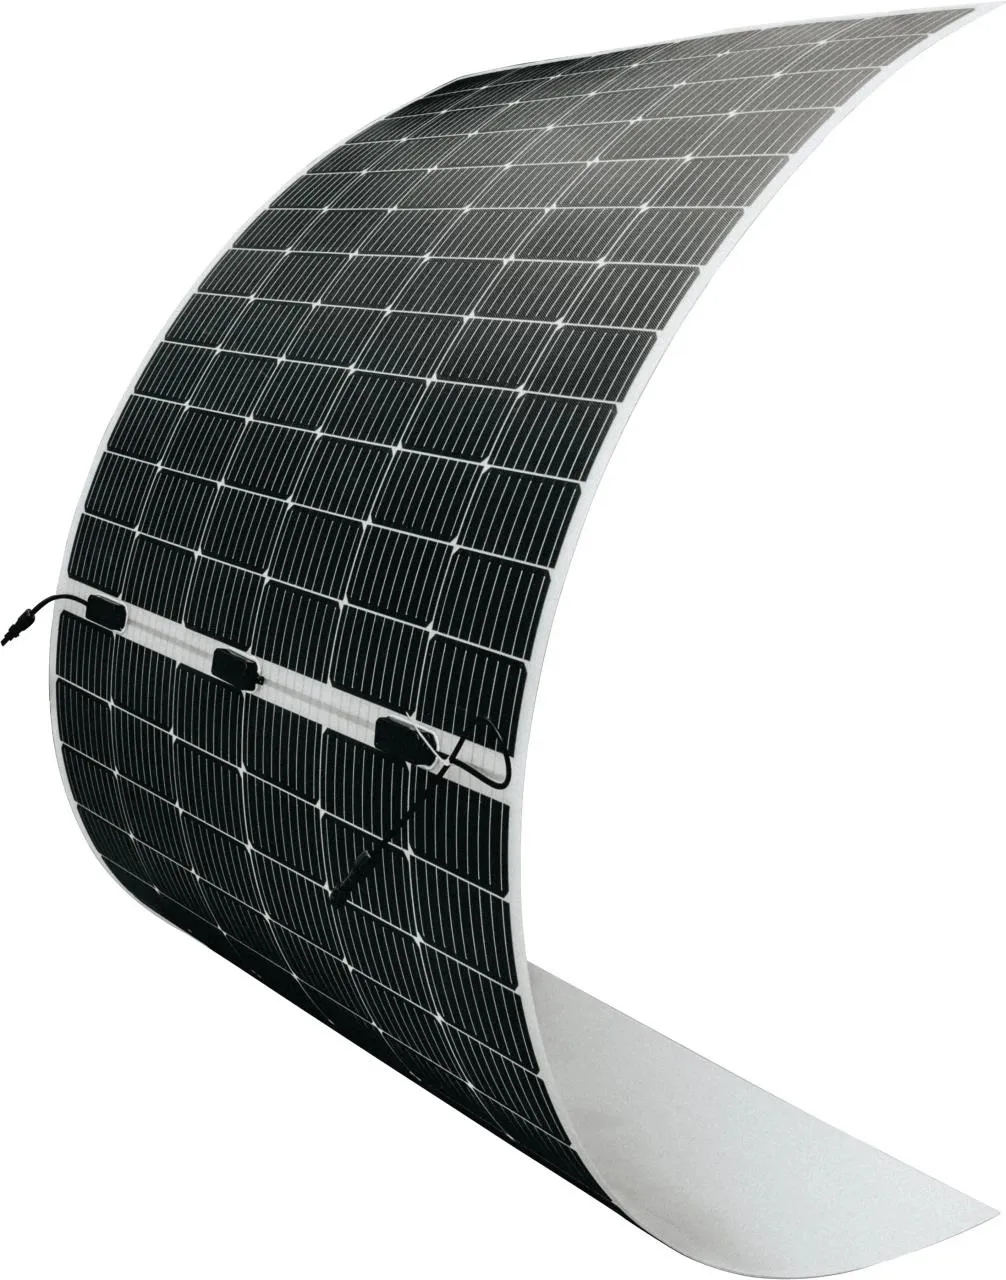 Fornitori cinesi pannelli solari prezzo dalla cina 500w pannello solare flessibile prezzo più basso pannelli solari